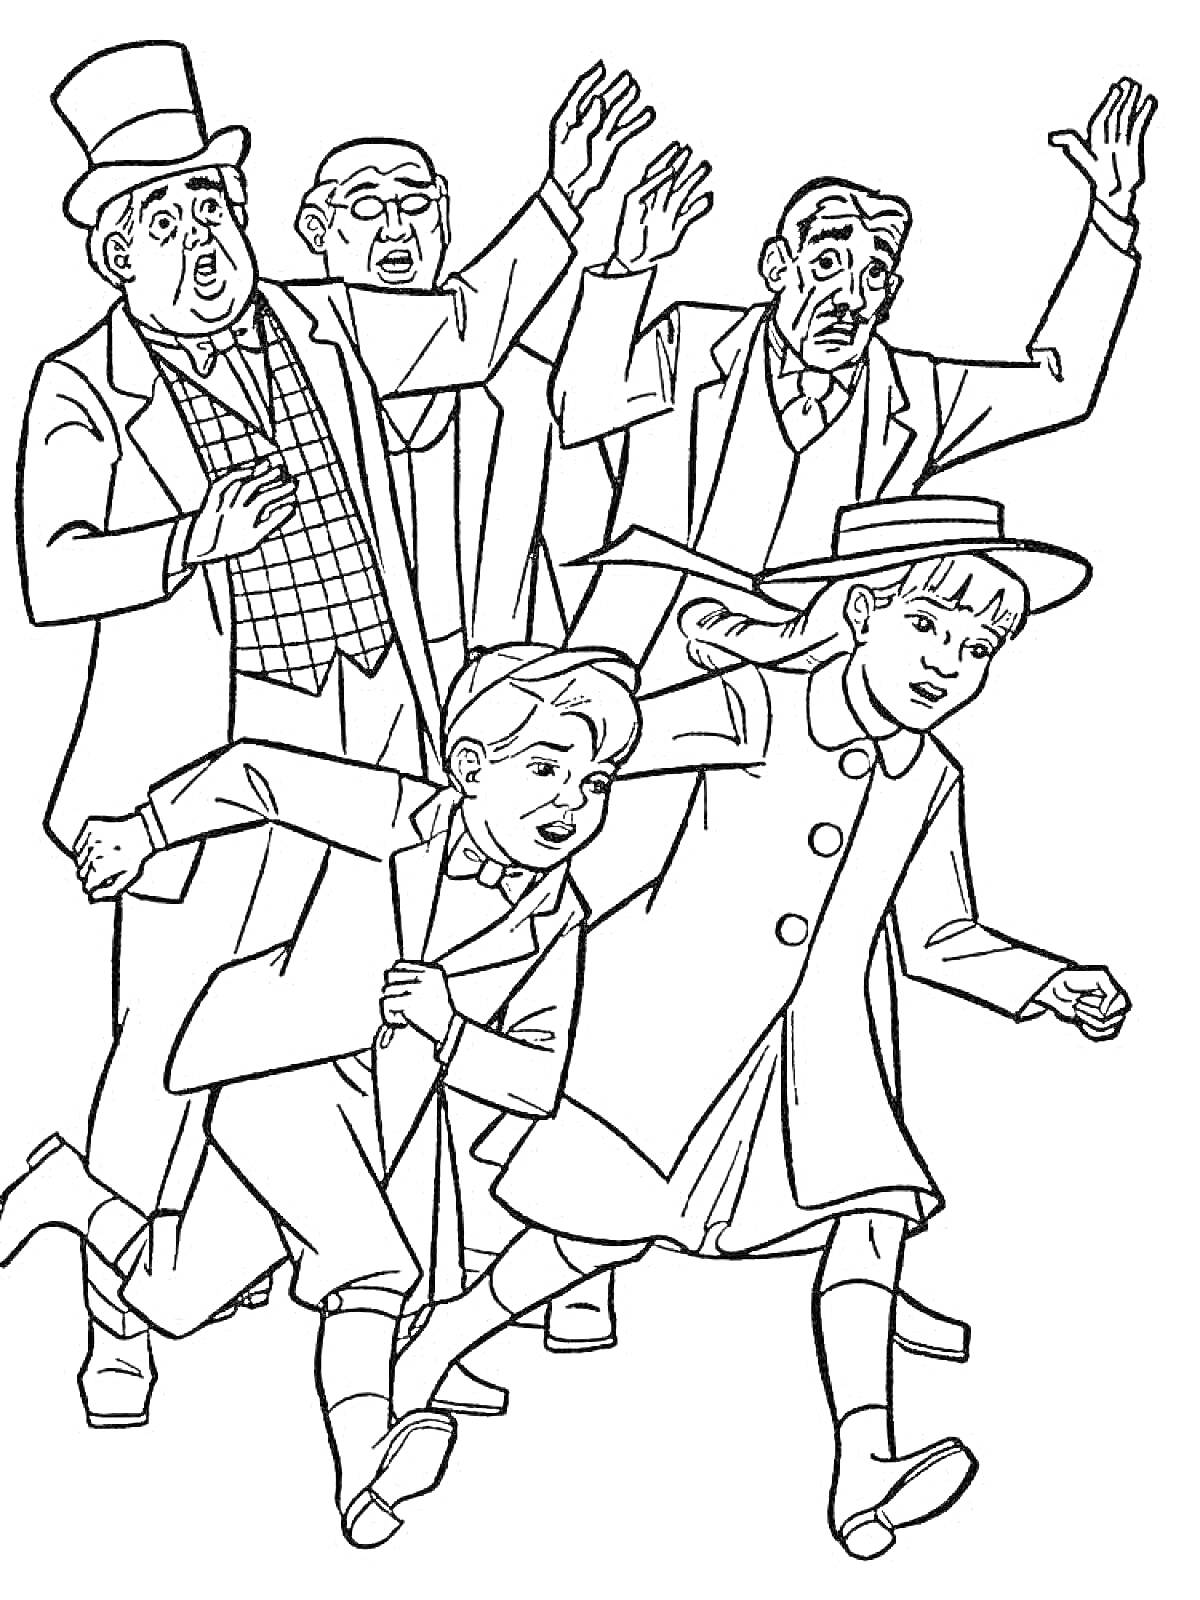 Группа людей в одежде начала 20 века, один человек в цилиндре, еще трое мужчин, двое детей в длинных плащах, девочка в шляпе ведет за руку мальчика